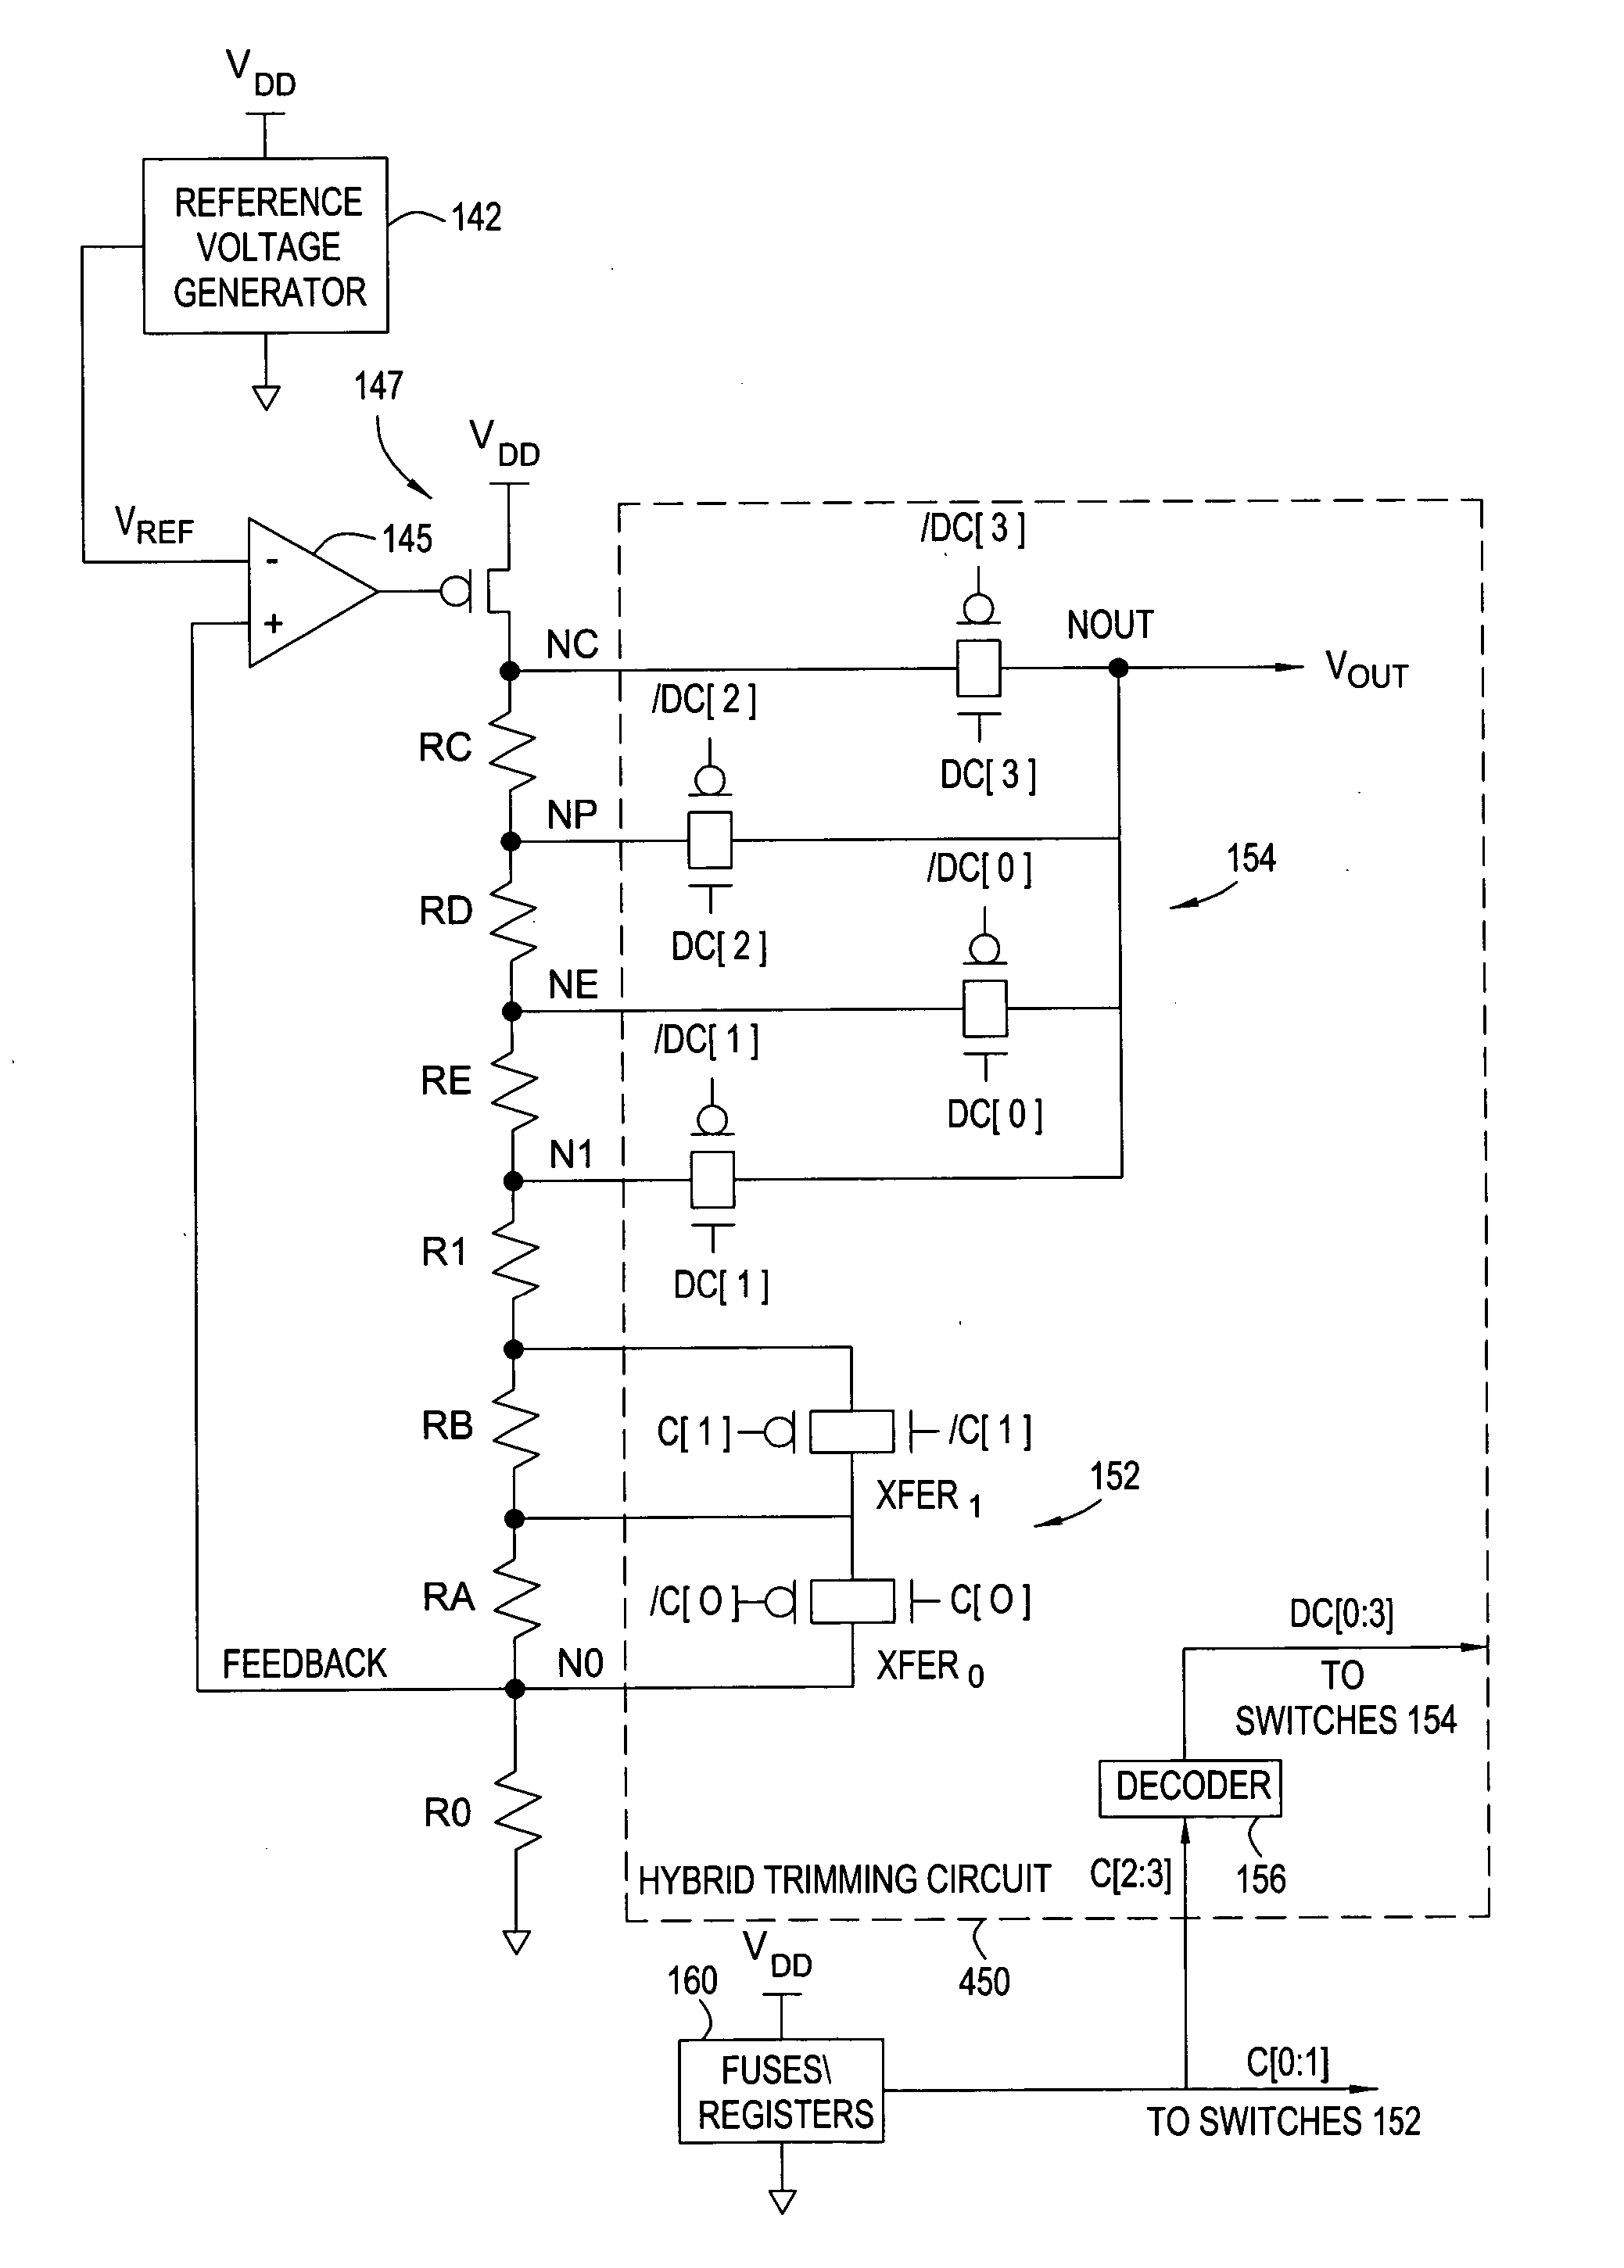 Voltage trimming circuit